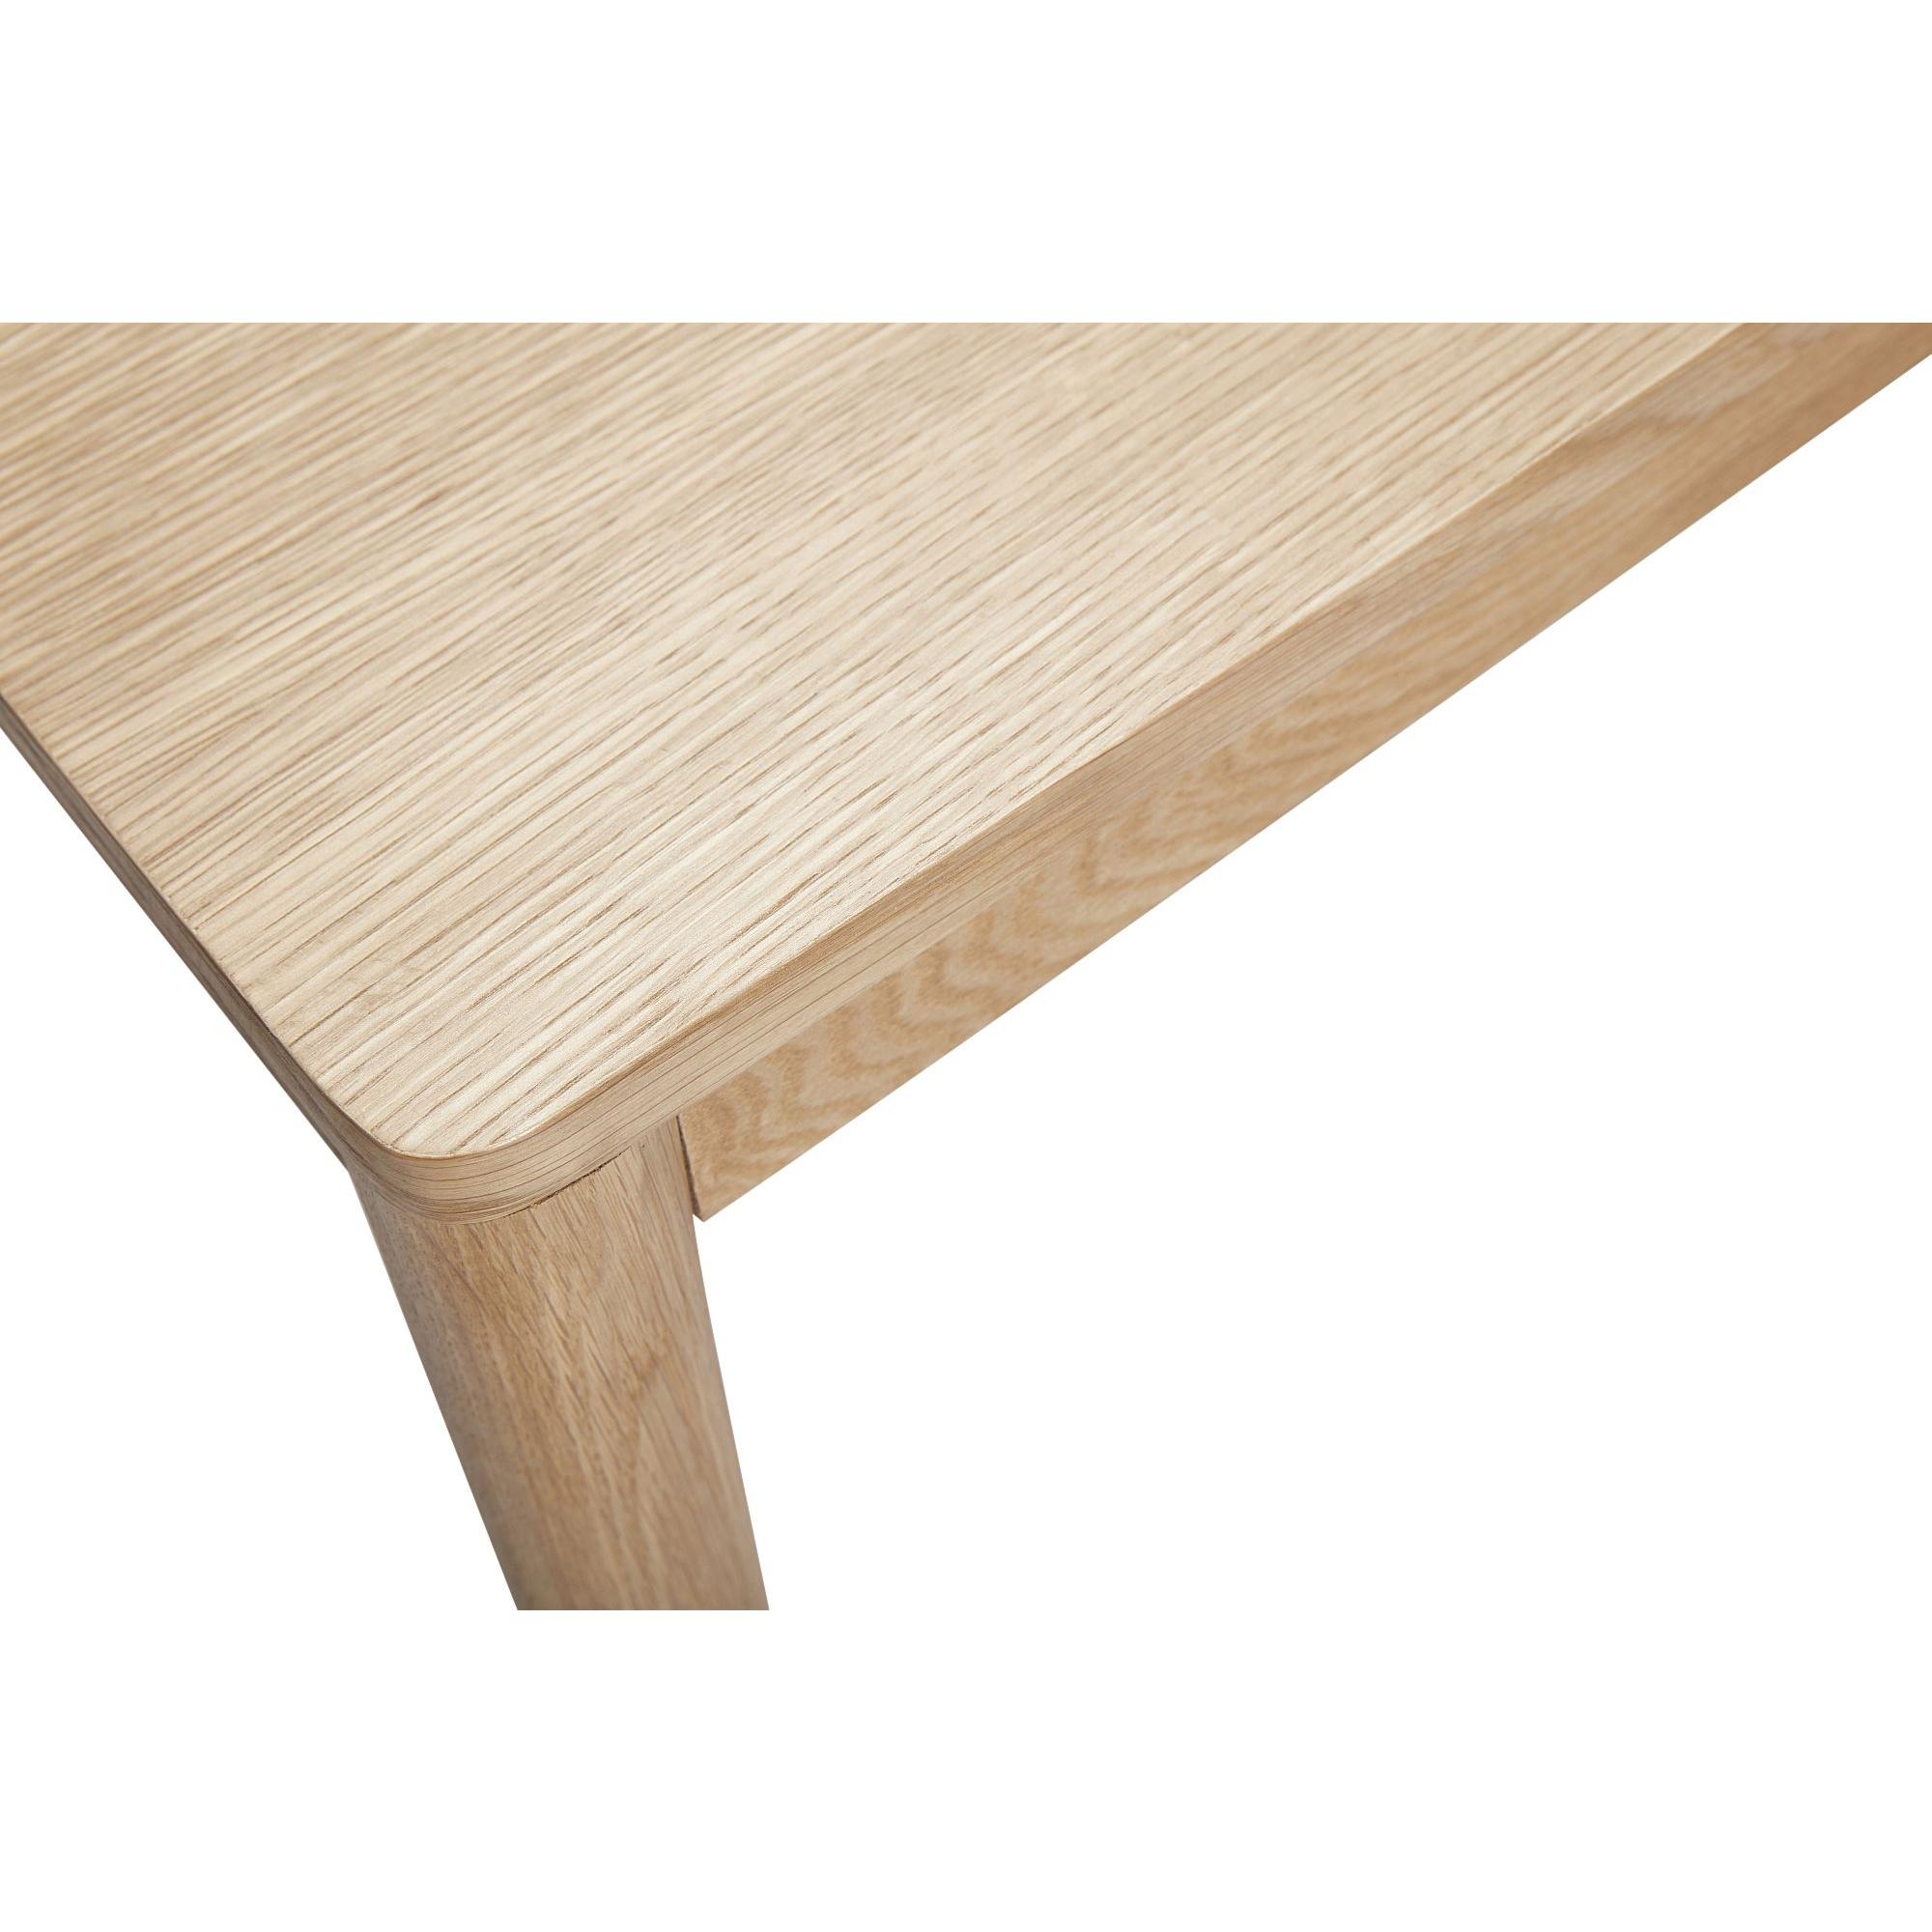  Acorn - Spisebord i egetræ 140 cm. fra Hübsch Interiør i Egetræ, Egefinér (Varenr: 880705)